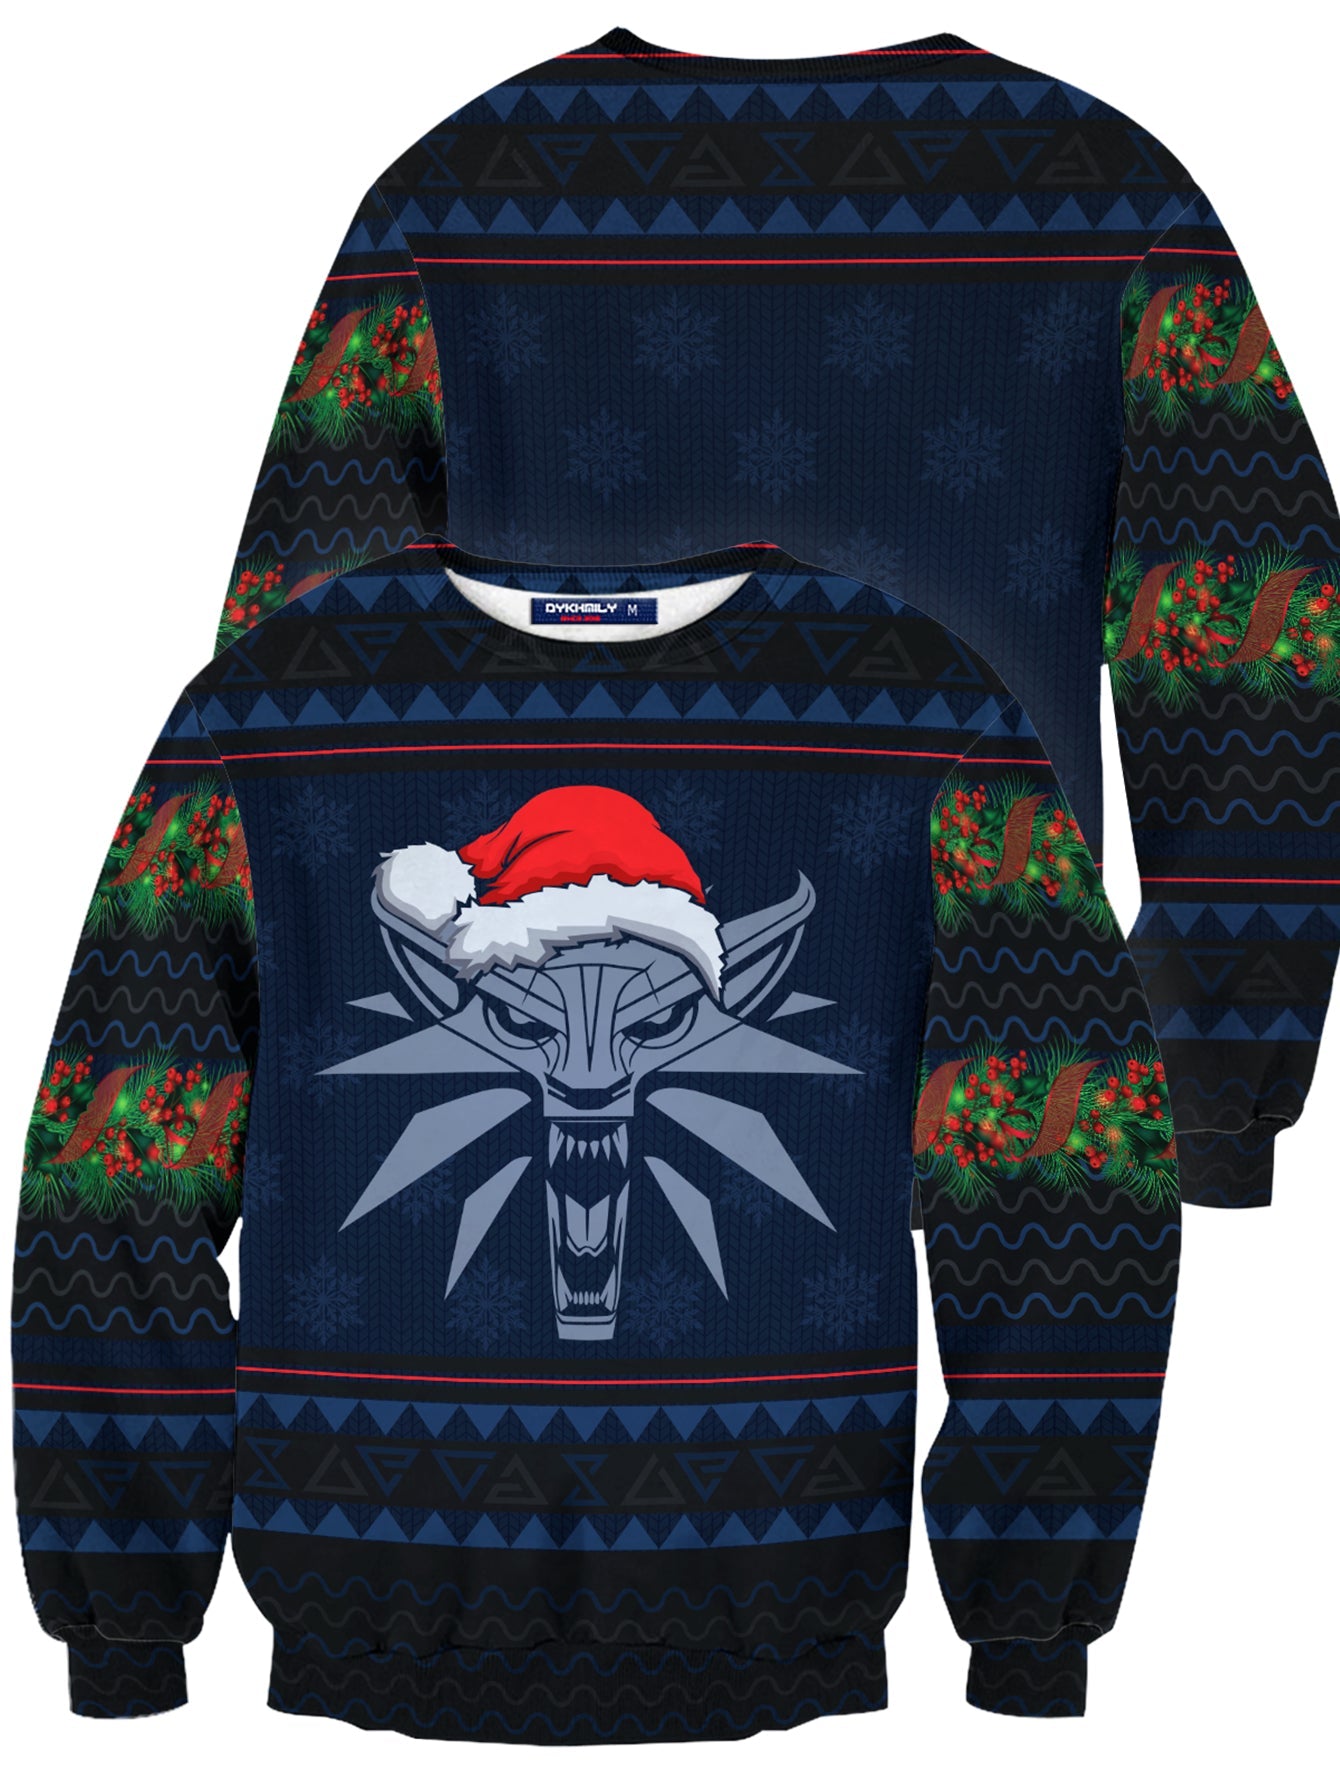 Fandomaniax - Witcher Geralt Christmas Unisex Wool Sweater